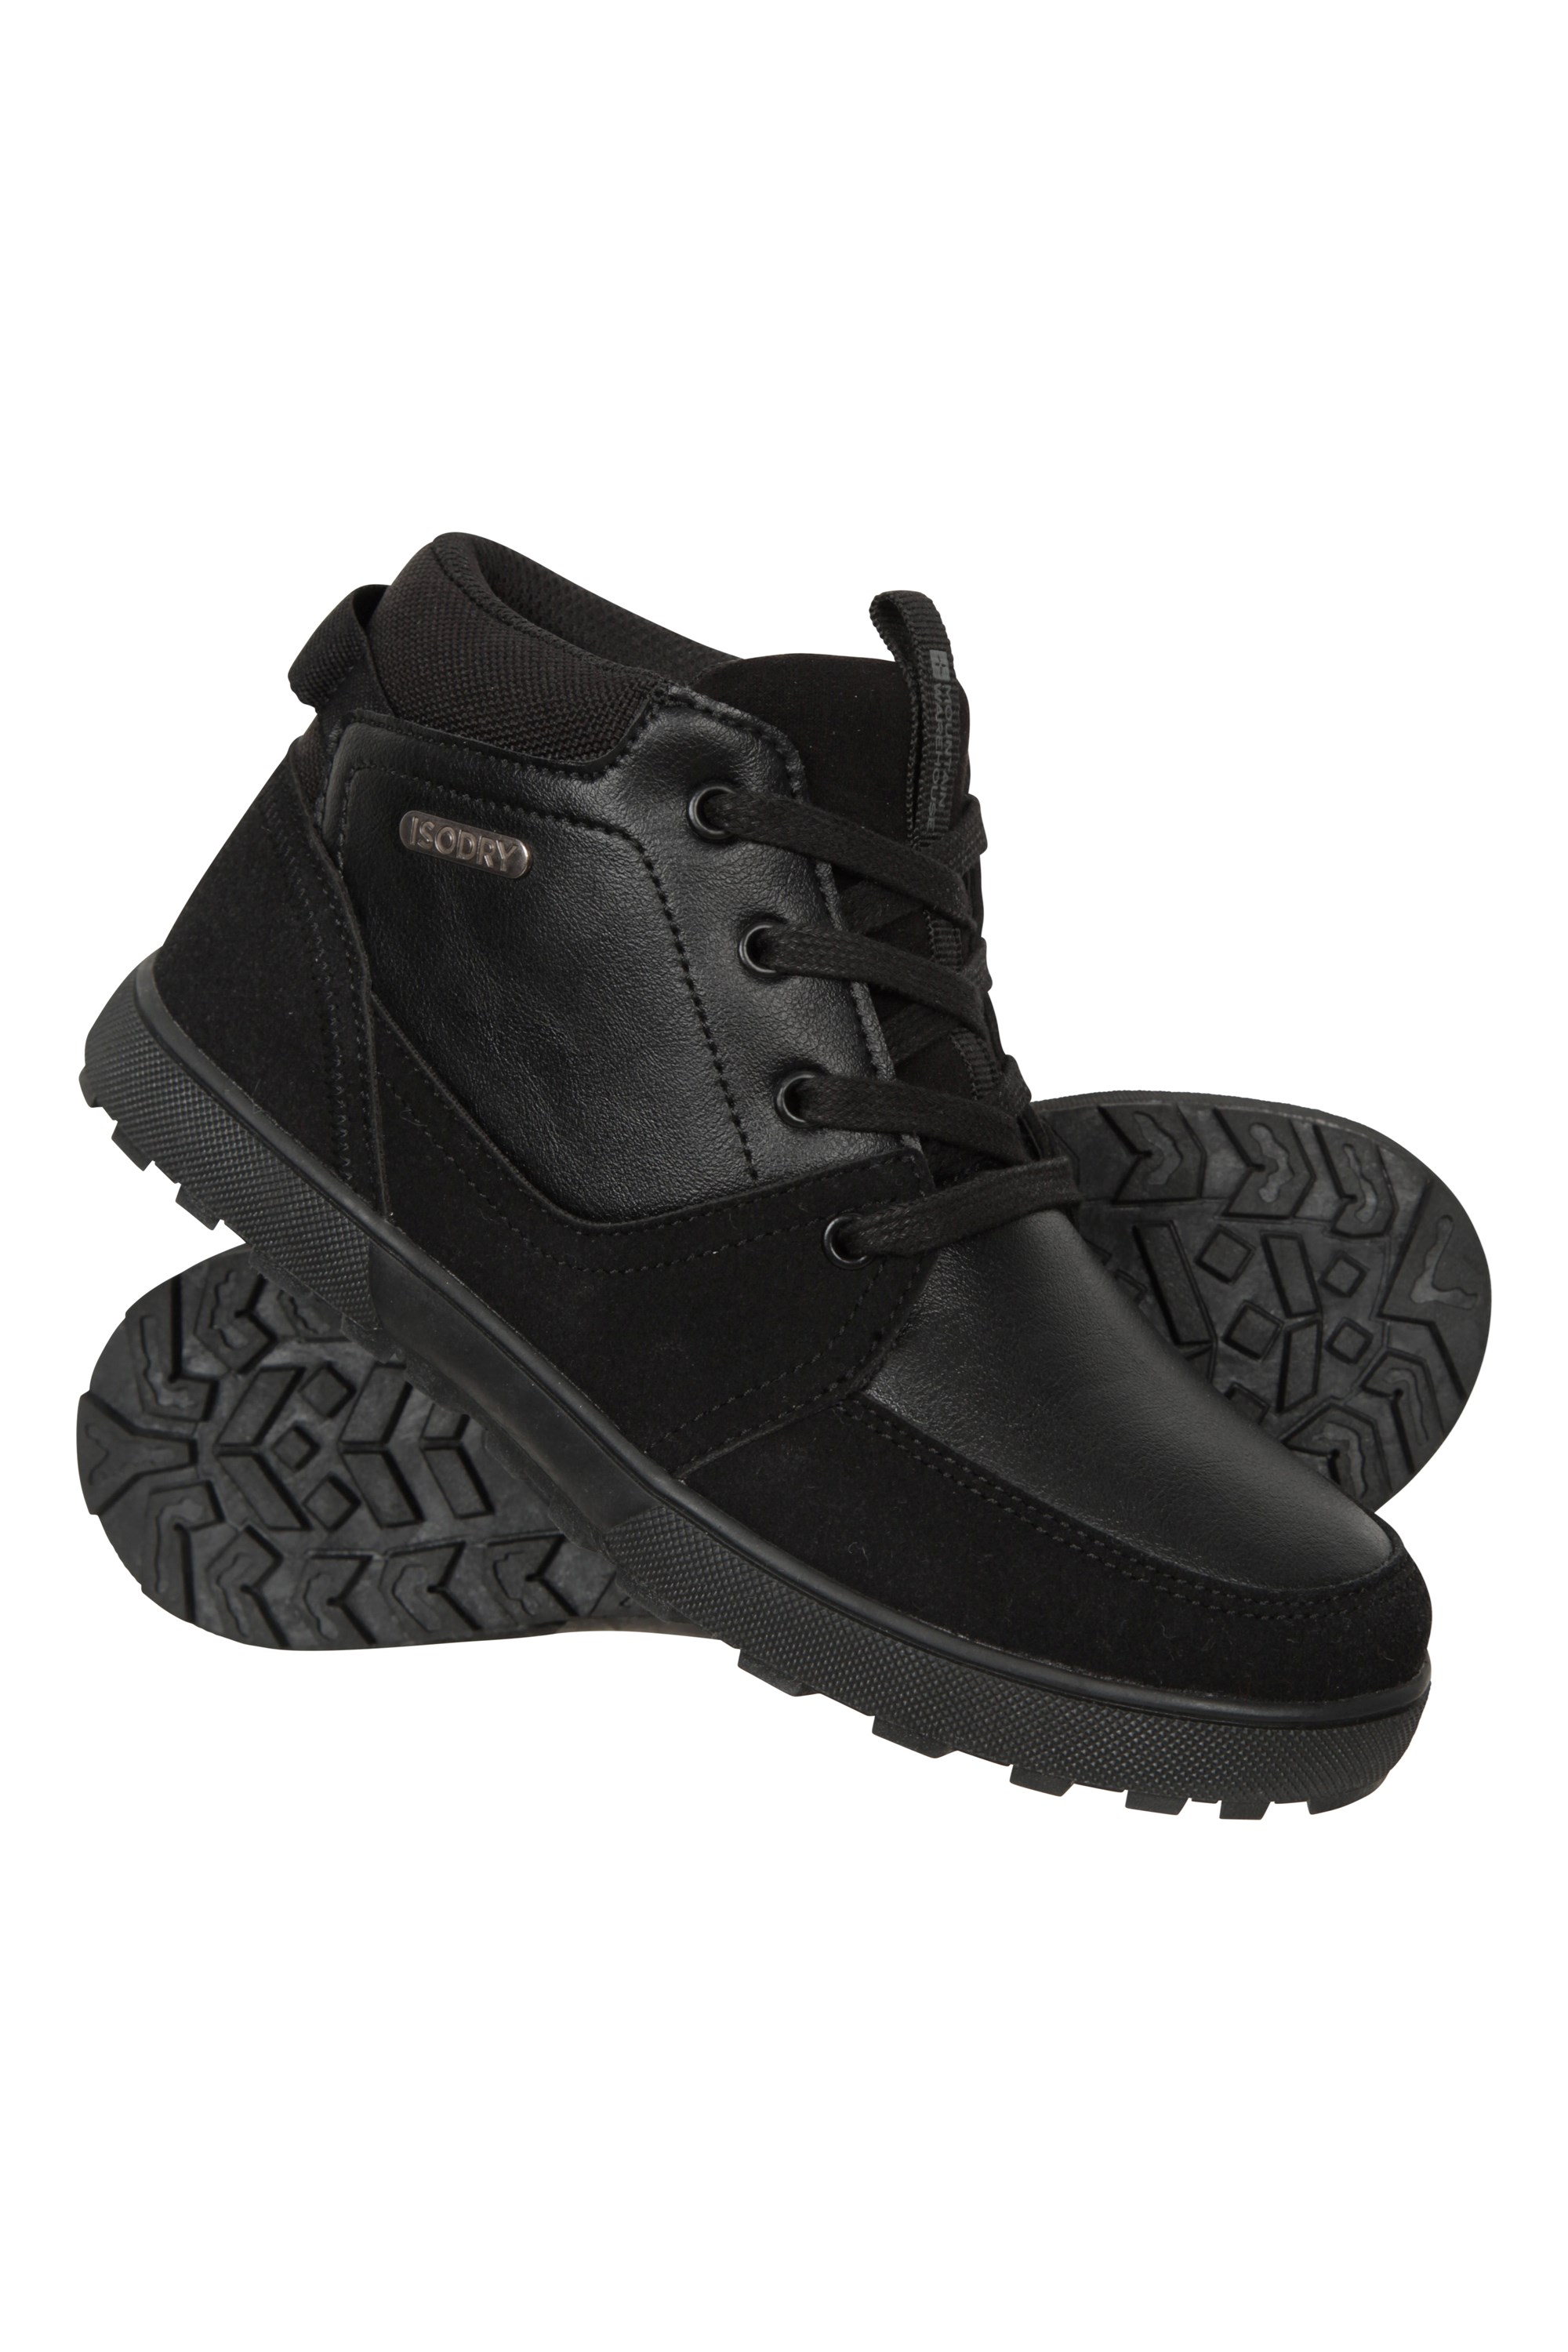 Spark Kids Waterproof School Boot - Black